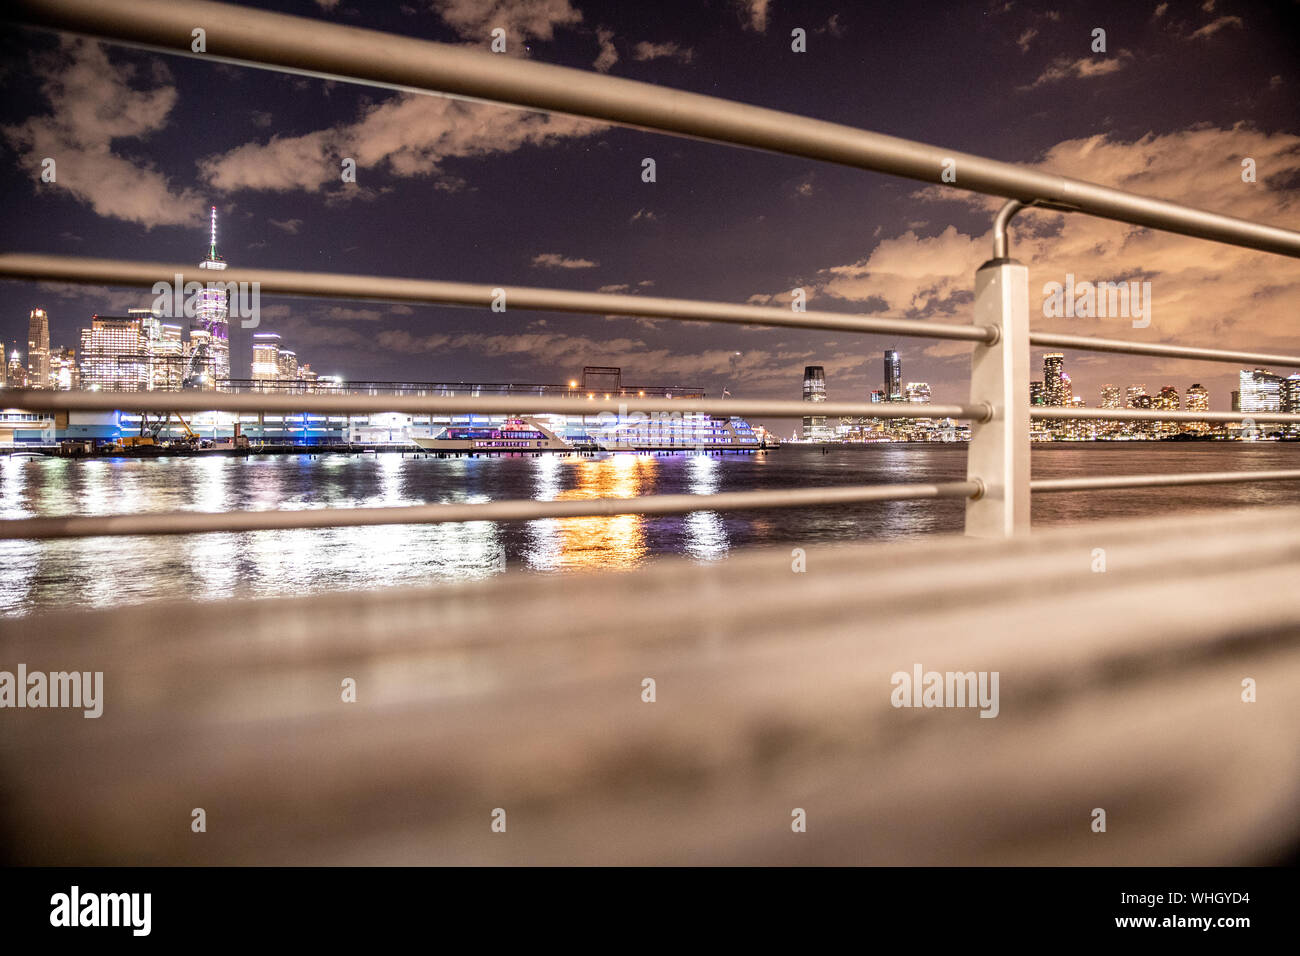 Vue sur la ville de New York skyline vue à travers railing on pier Banque D'Images